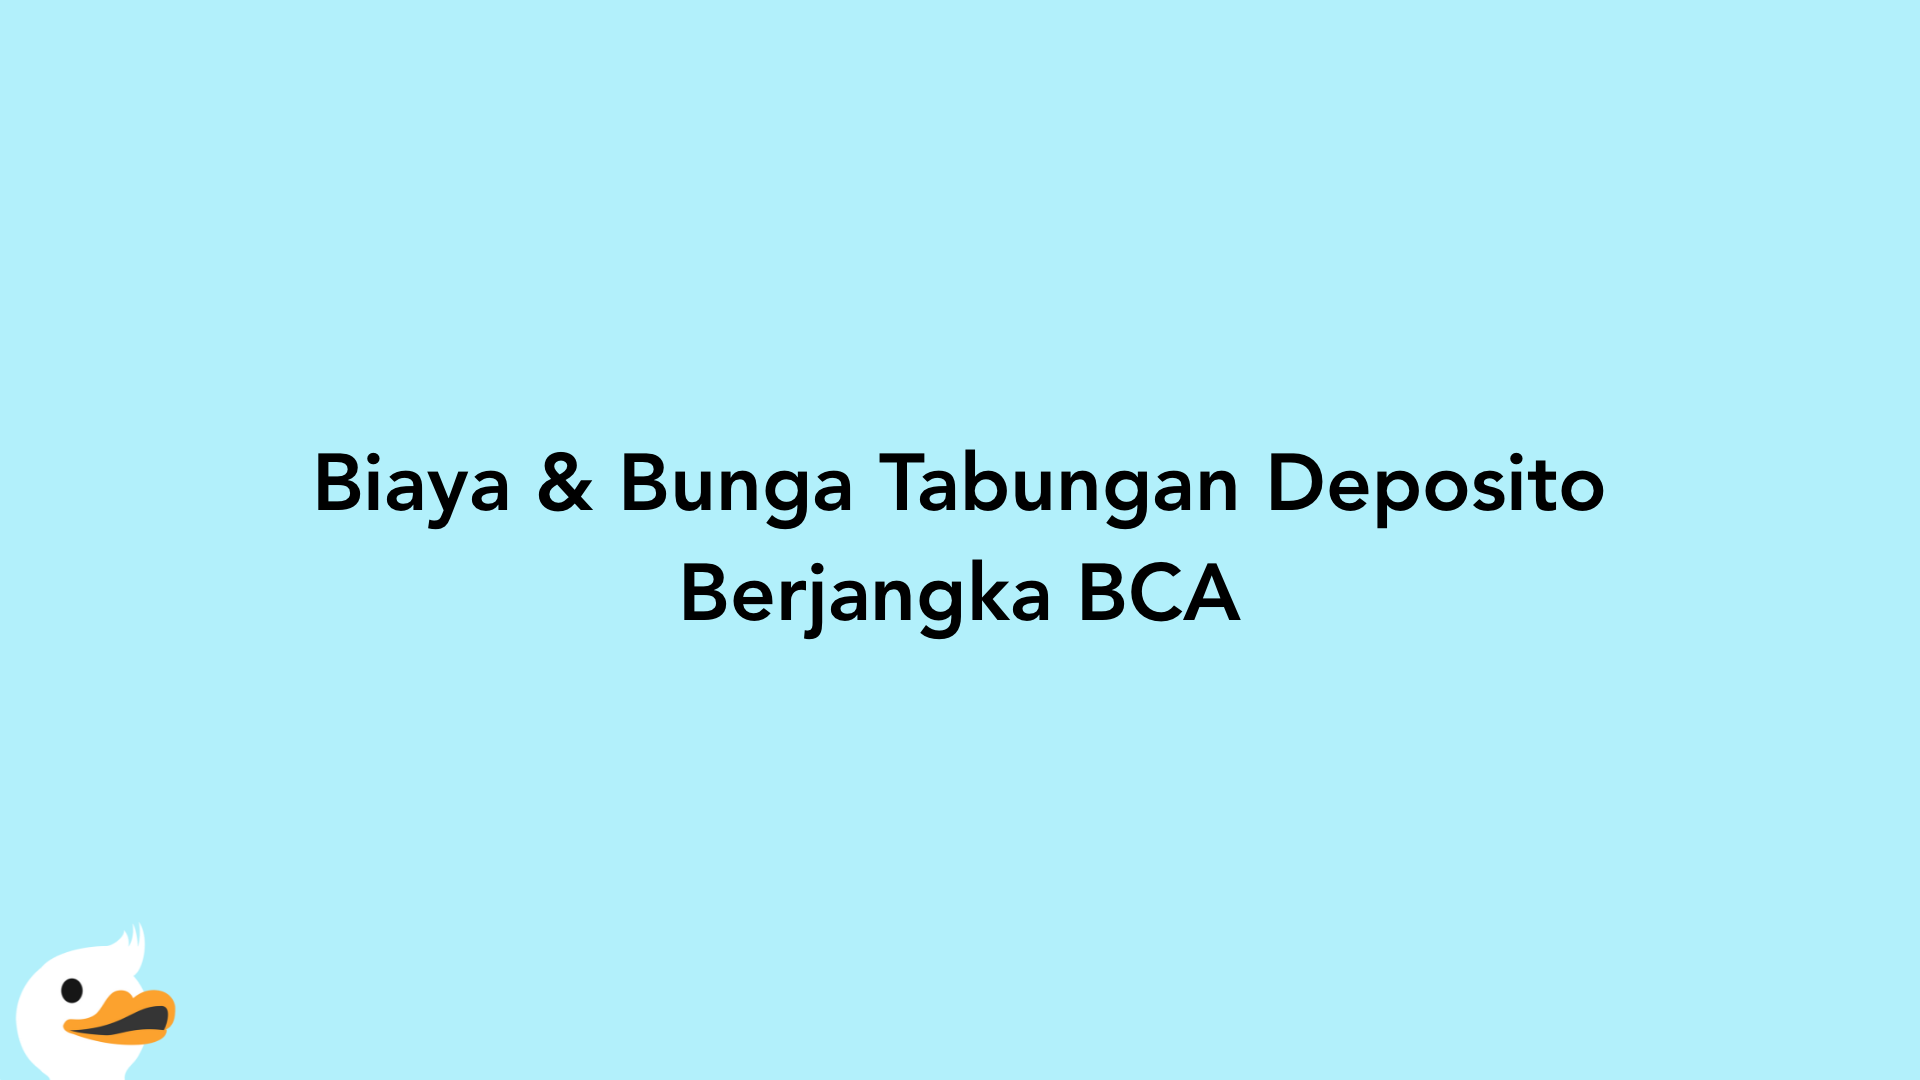 Biaya & Bunga Tabungan Deposito Berjangka BCA